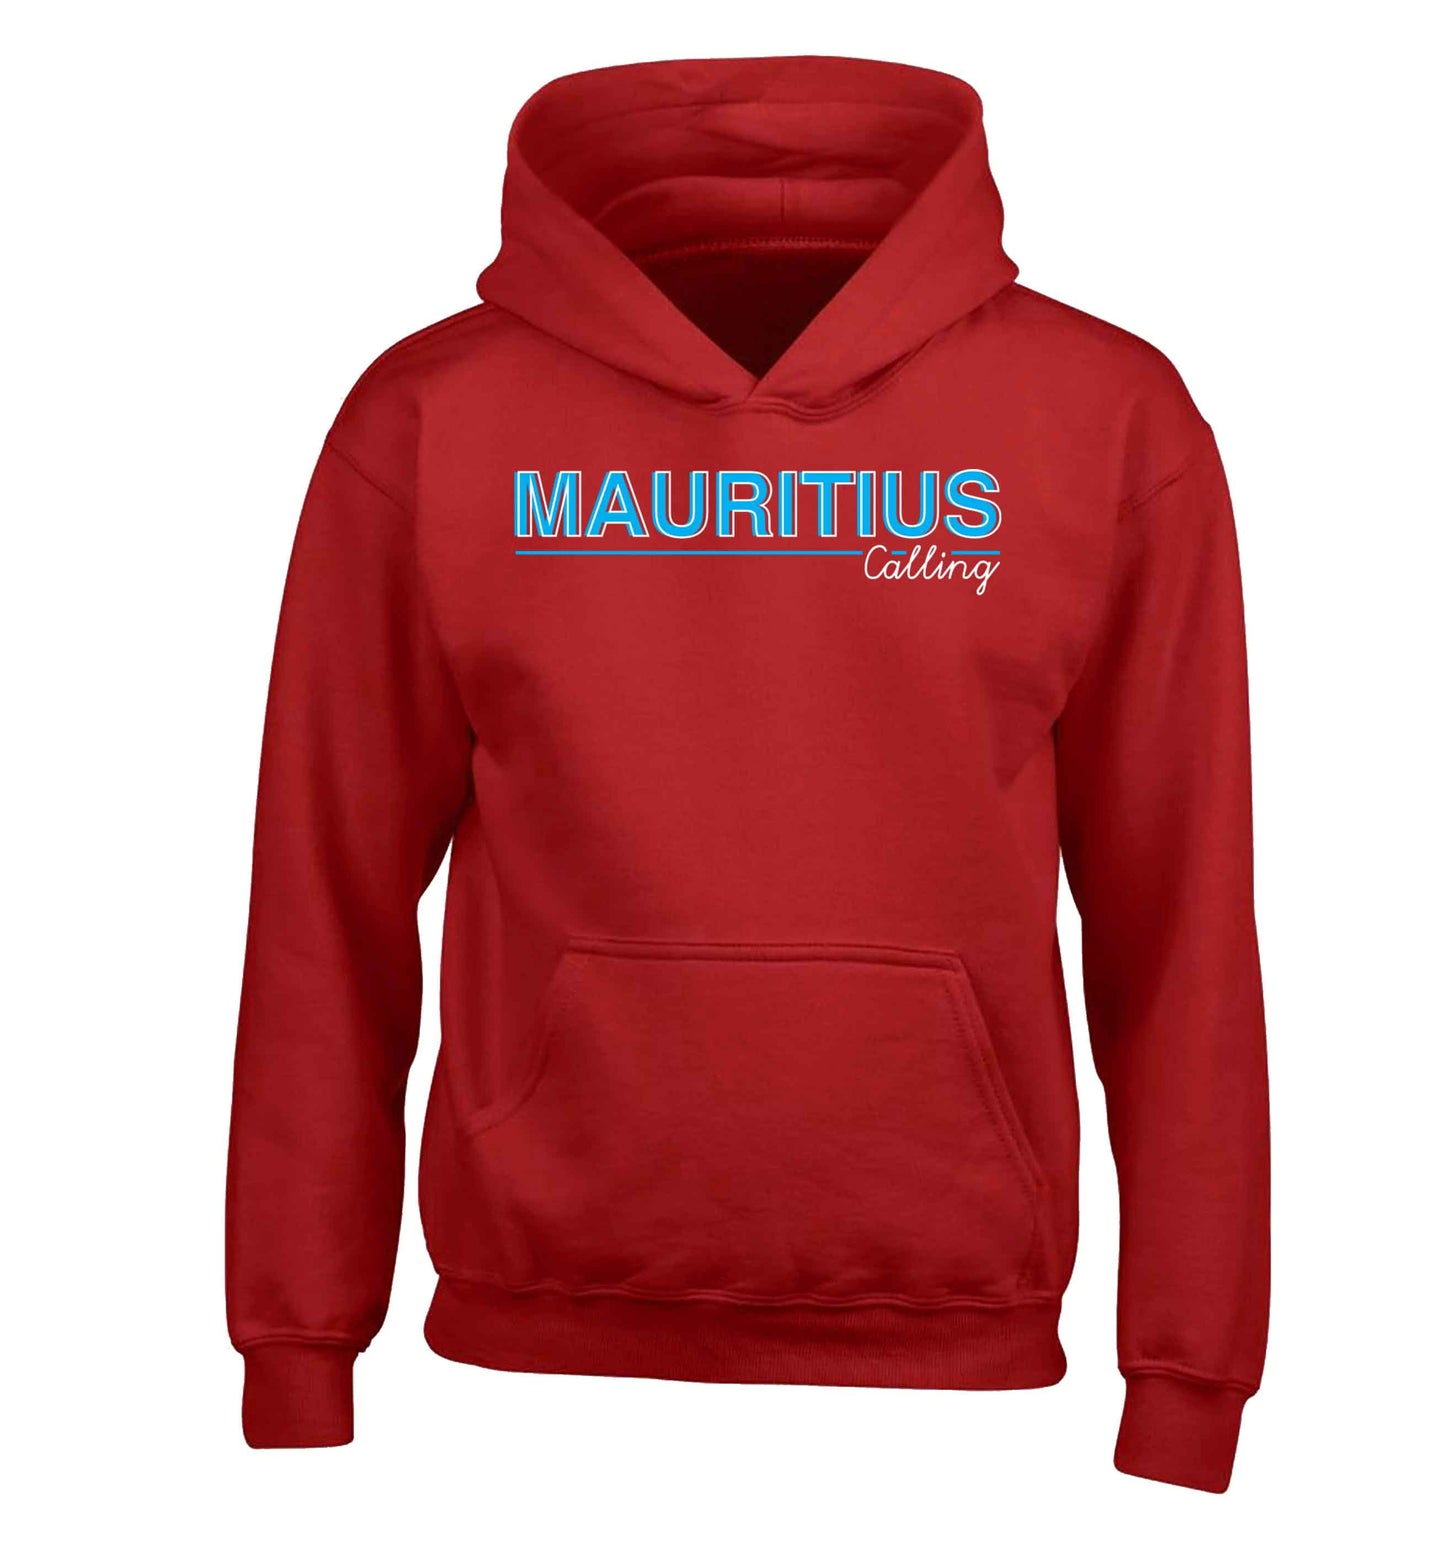 Mauritius calling children's red hoodie 12-13 Years